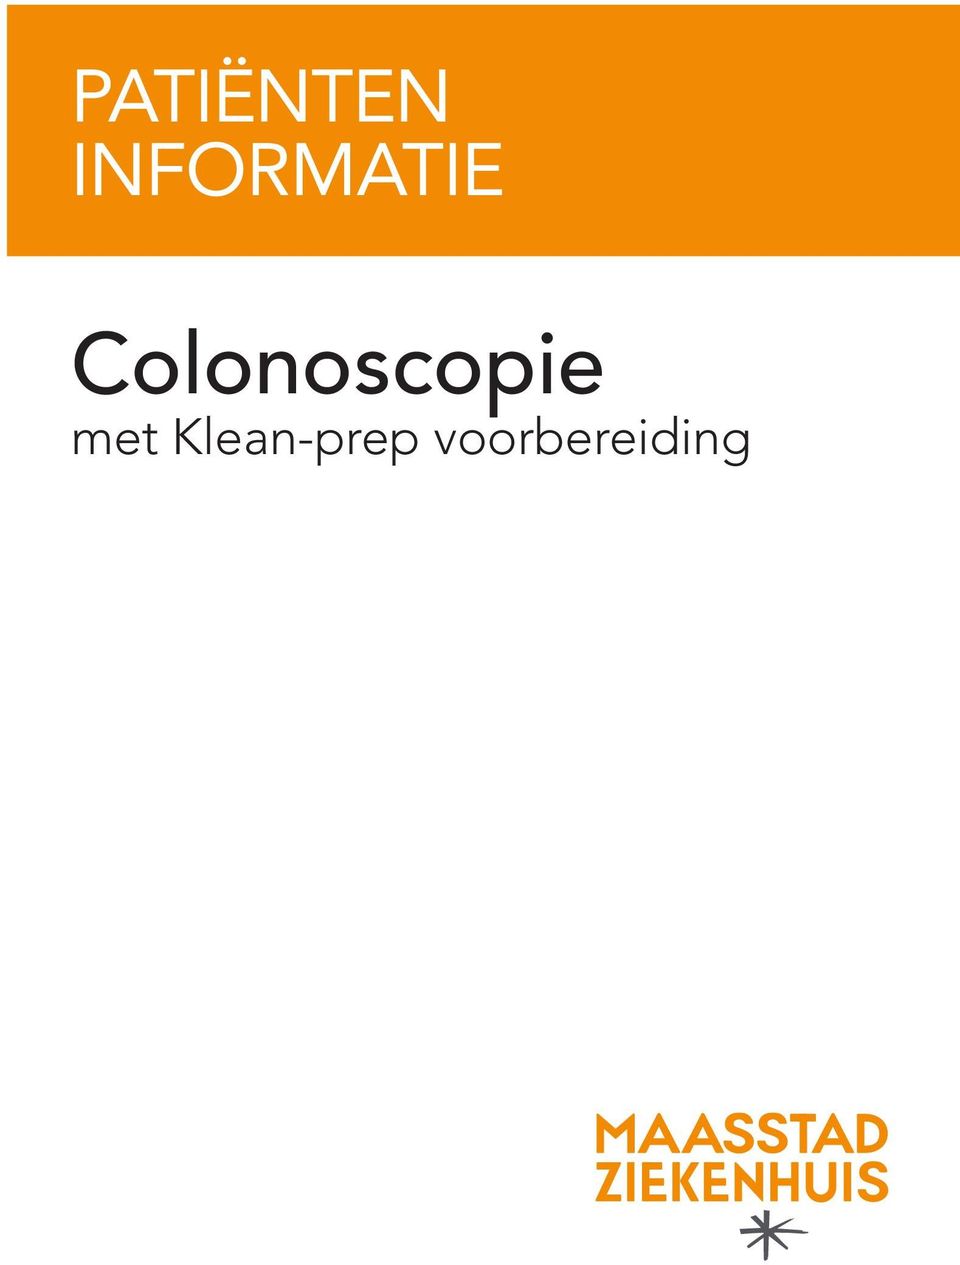 Colonoscopie